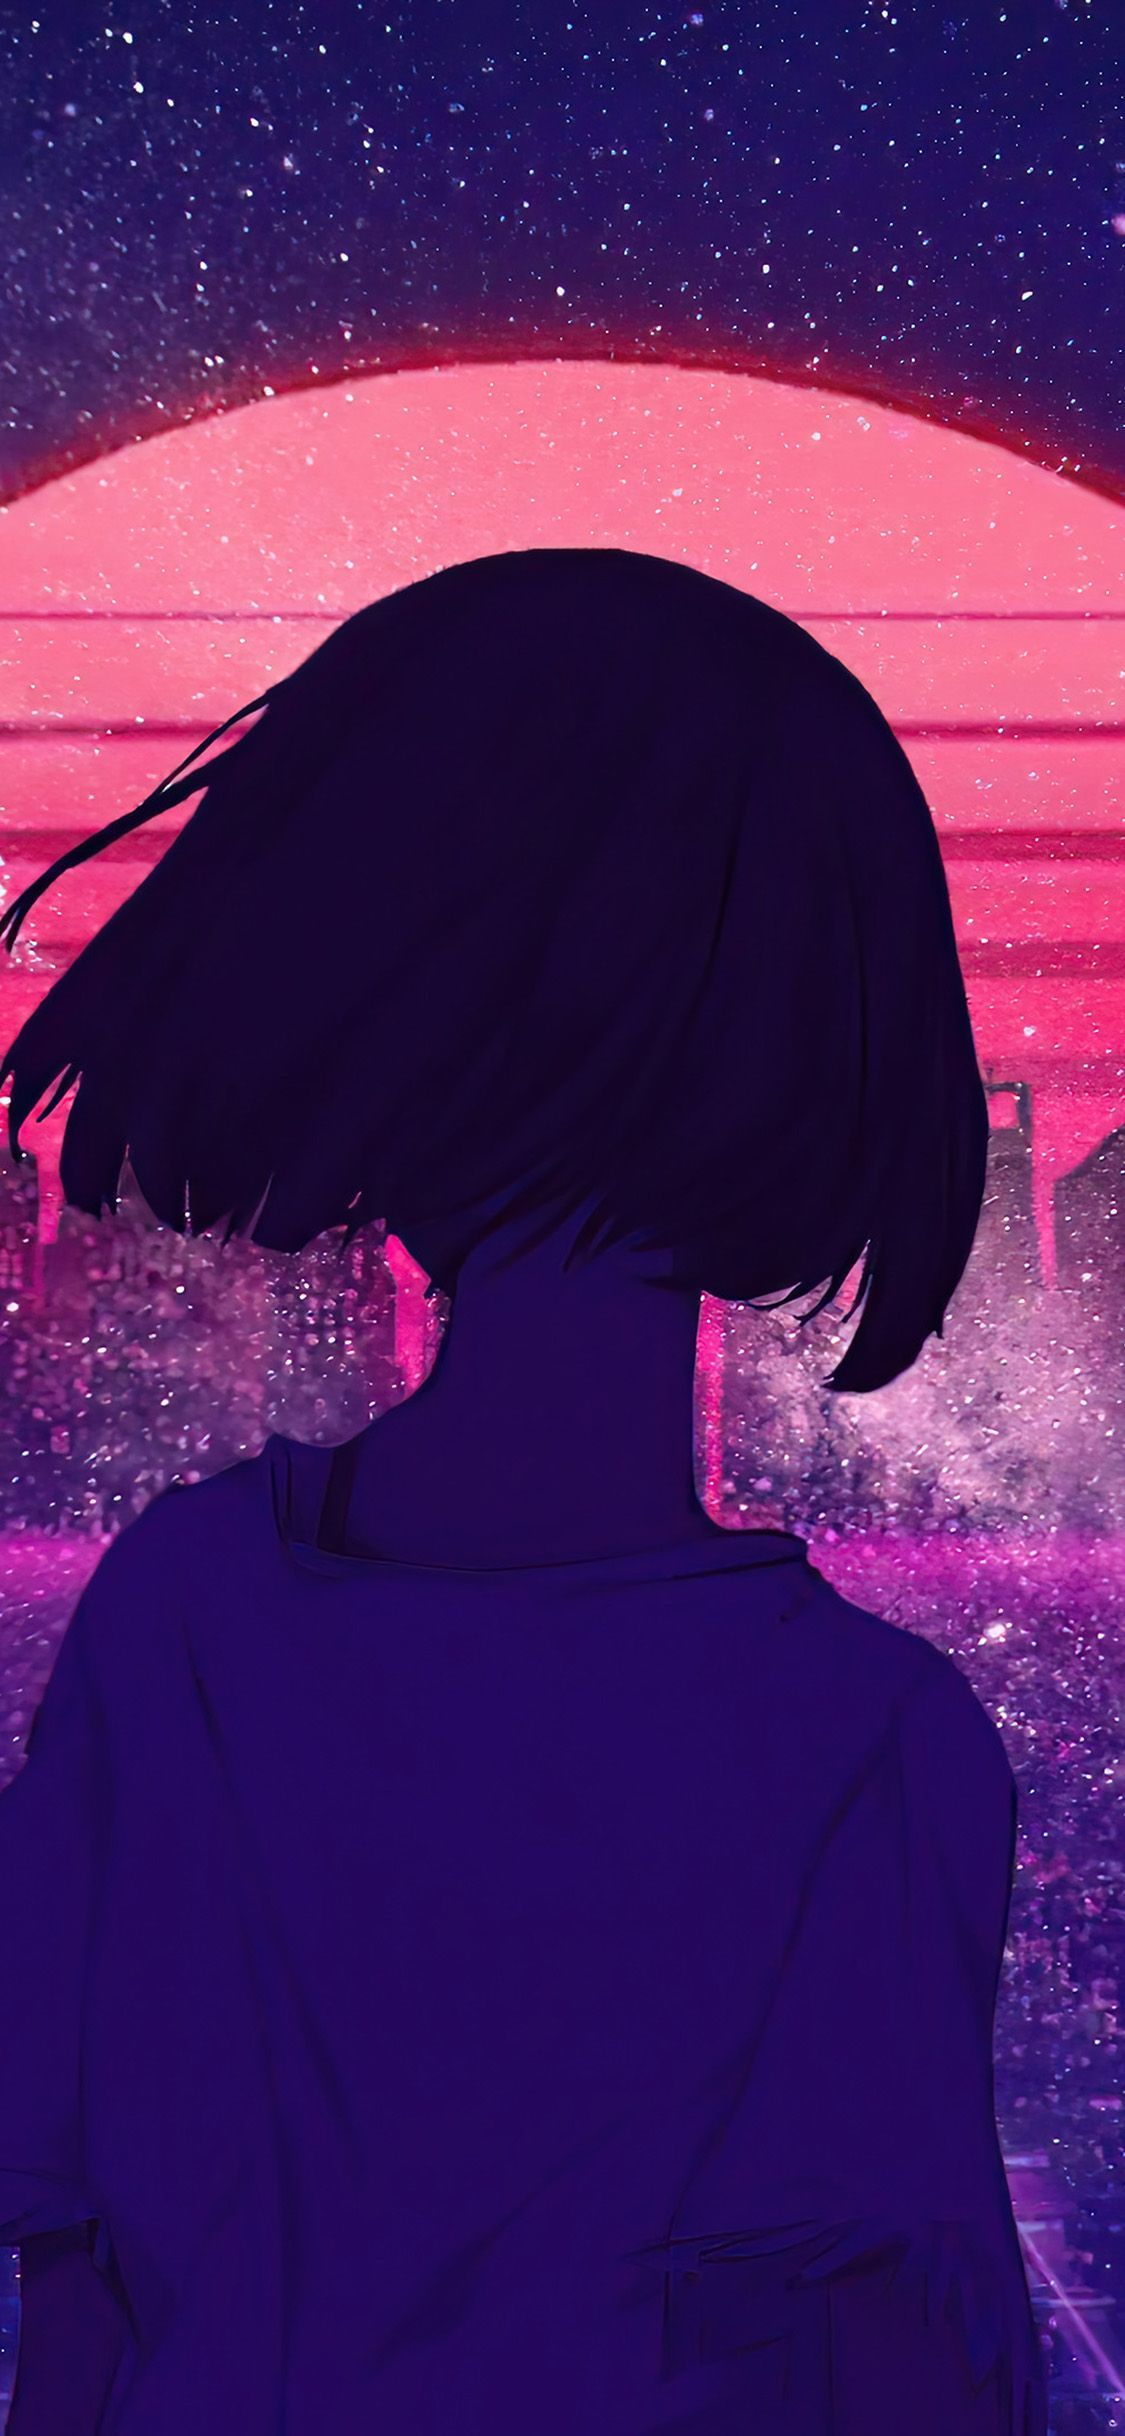 iPhone X wallpaper. art girl sunset anime